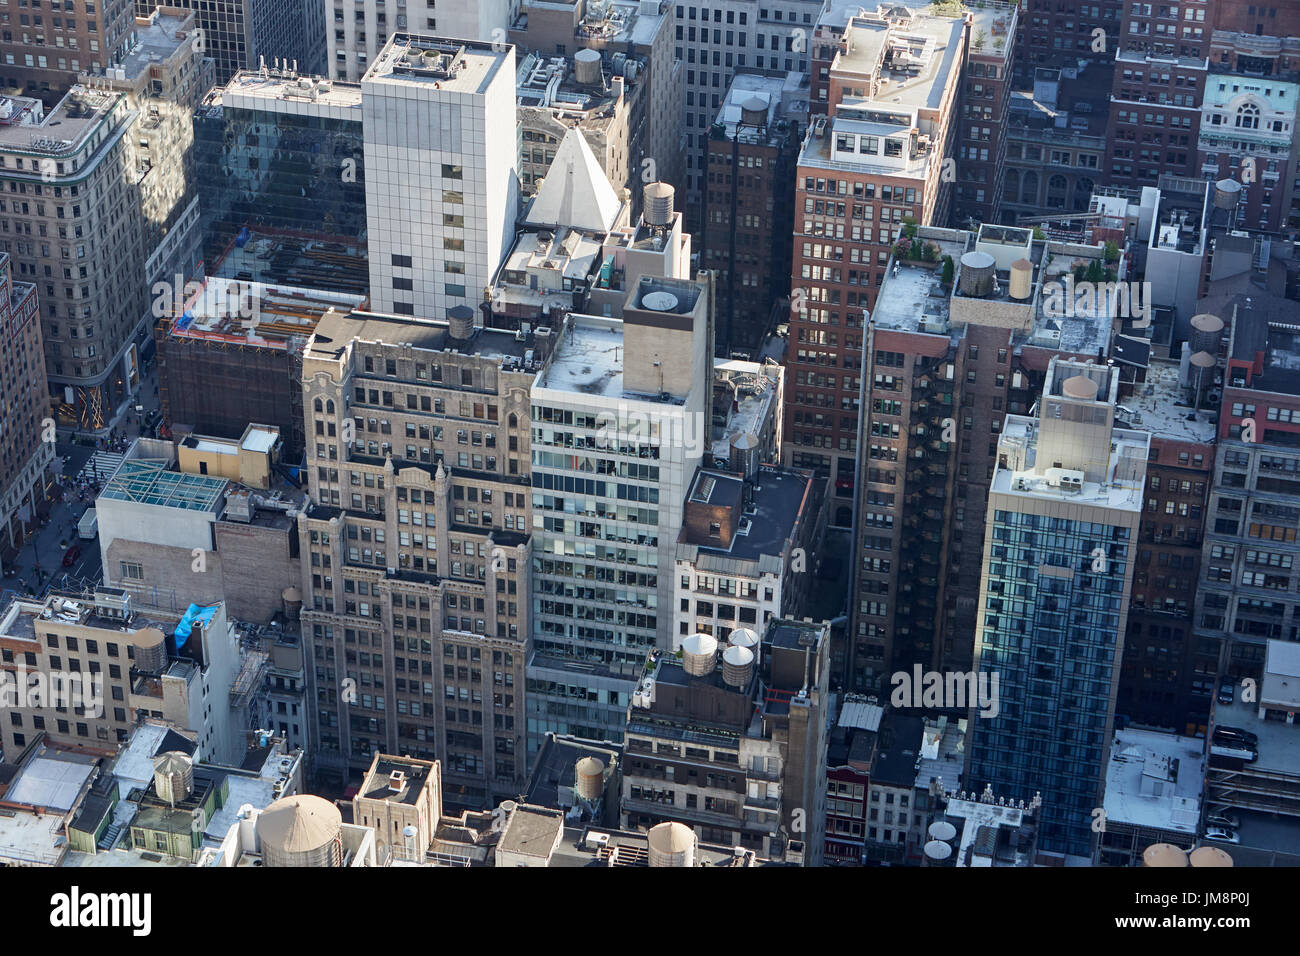 New York City Manhattan skyline vue aérienne avec des gratte-ciel, des rues et des toits Banque D'Images